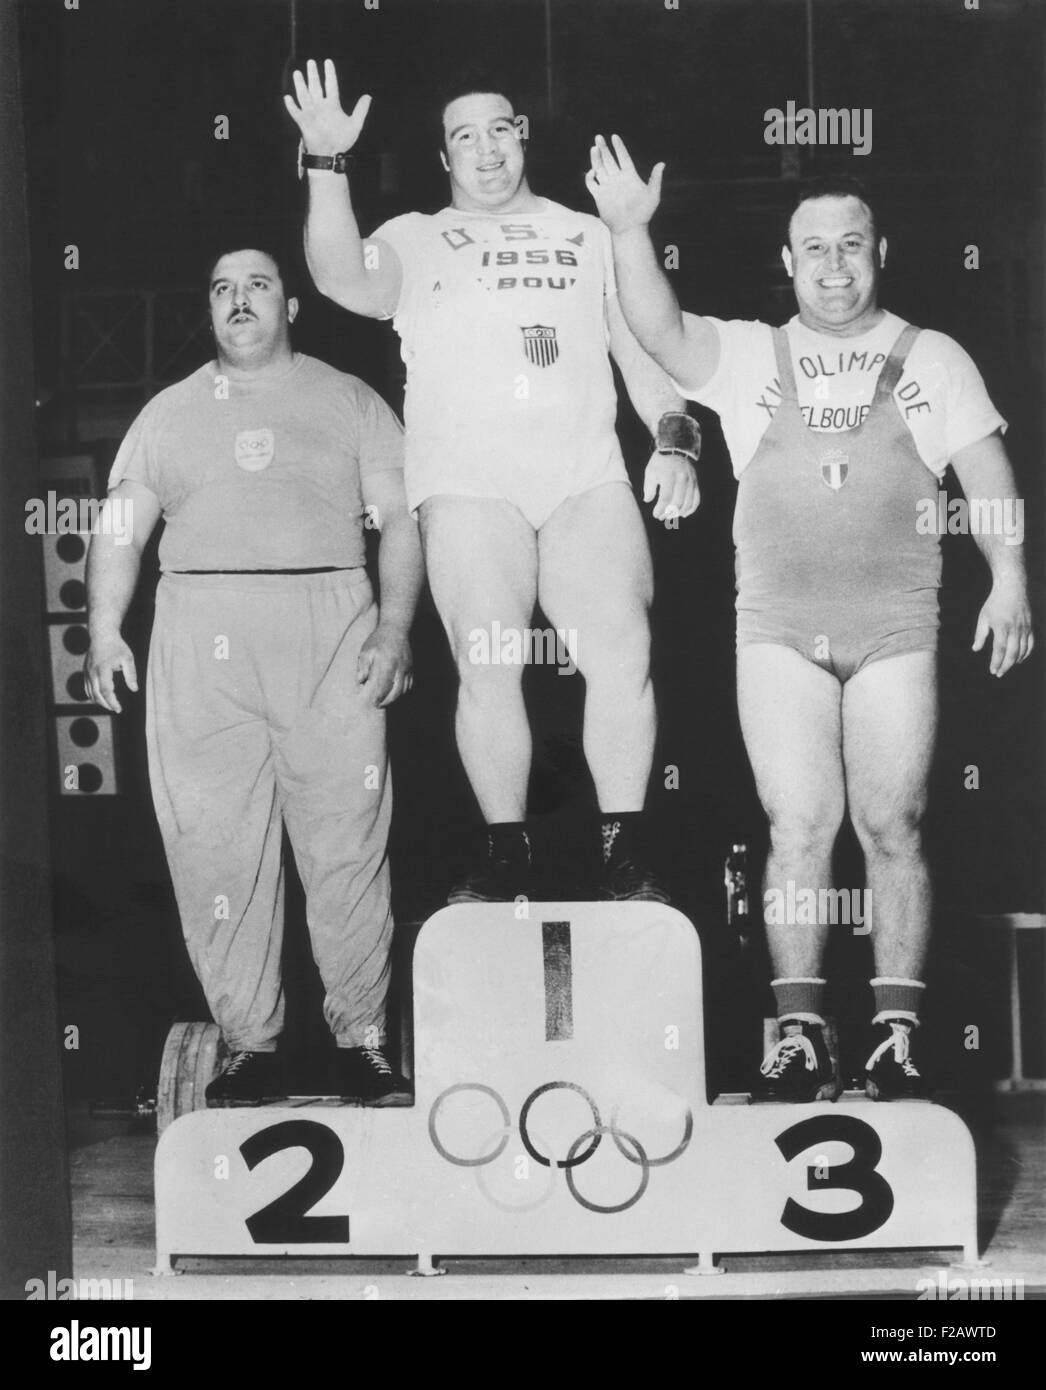 Paul Anderson (Mitte) gewann eine olympische Goldmedaille im Schwergewicht Gewichtheben. Melbourne, Australien-Spiele, 26. November 1956. Auf der linken Seite ist Argentiniens Humberto Silvetti, der die Silbermedaille gewann. Alberto Pigaiani Italien gewann Bronze. (CSU 2015 11 1202) Stockfoto